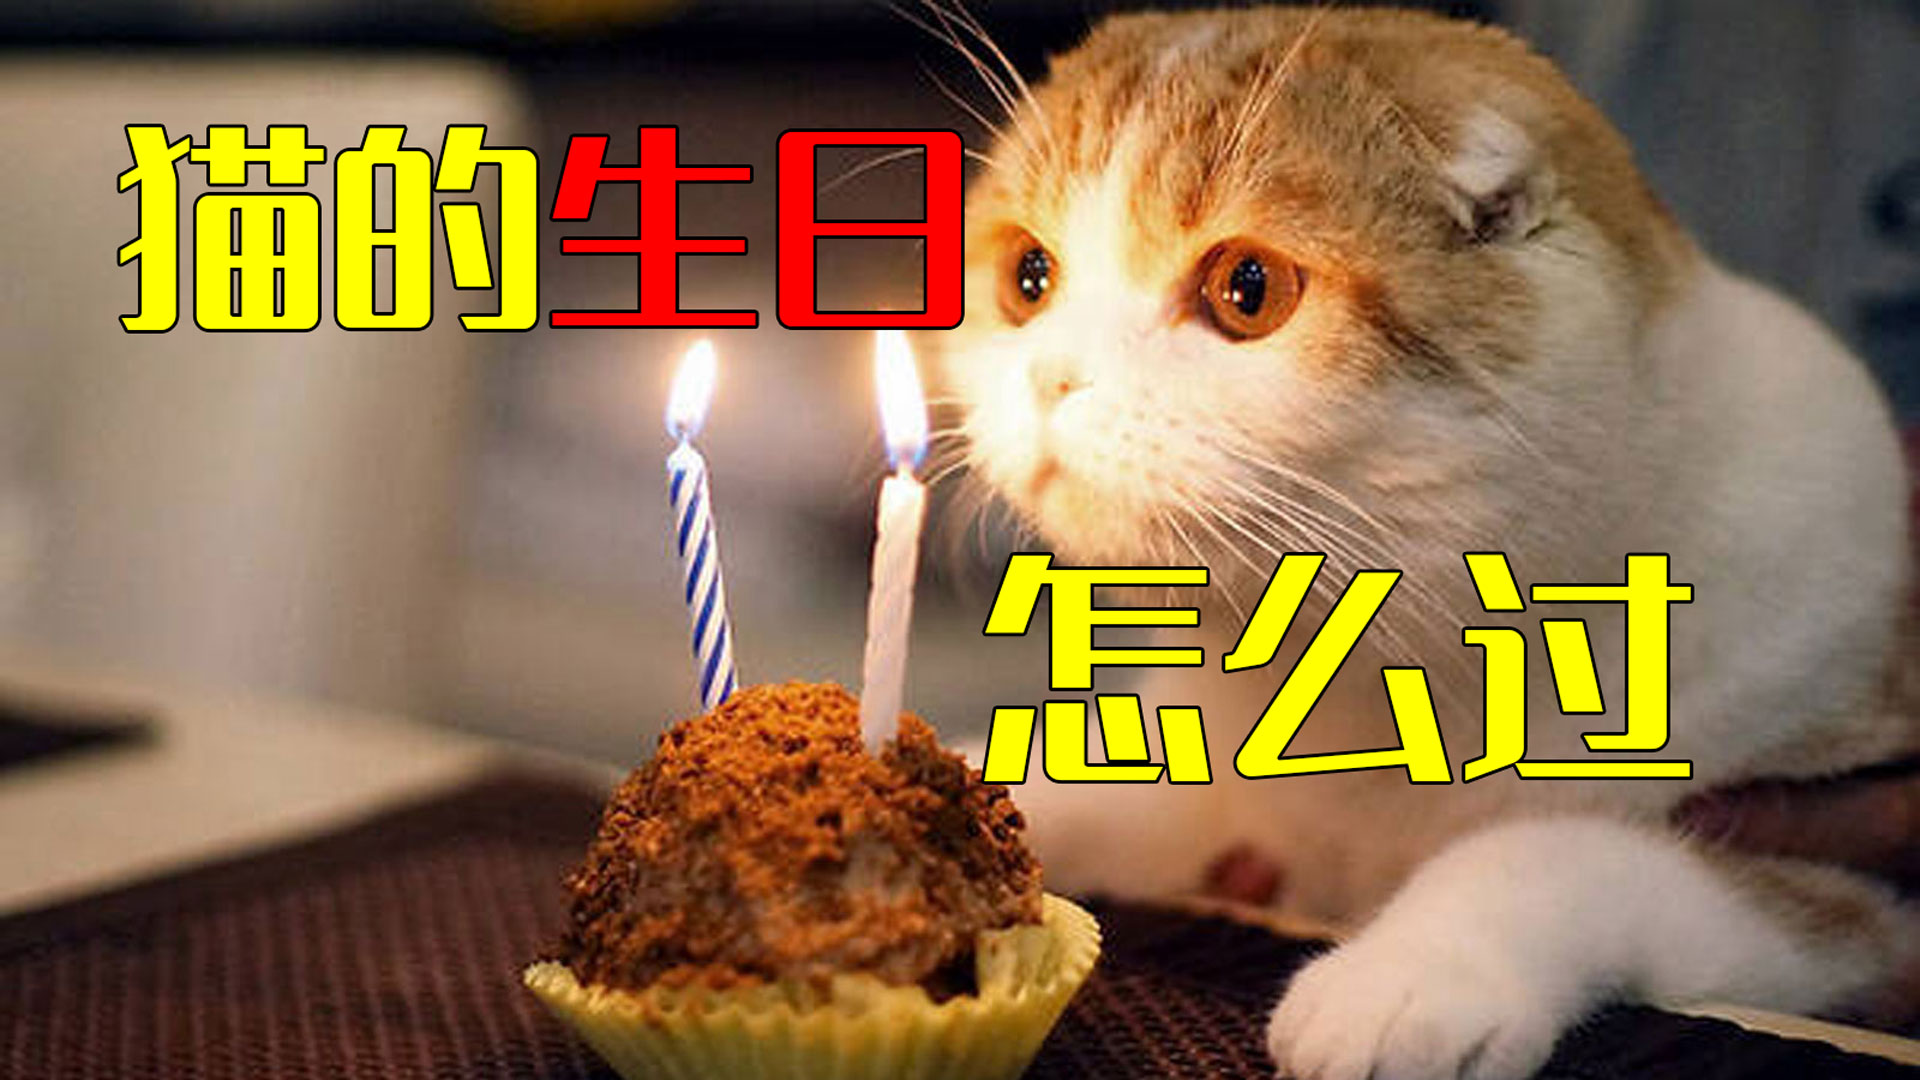 生日蛋糕猫咪图案,猫咪生日蛋糕 - 伤感说说吧